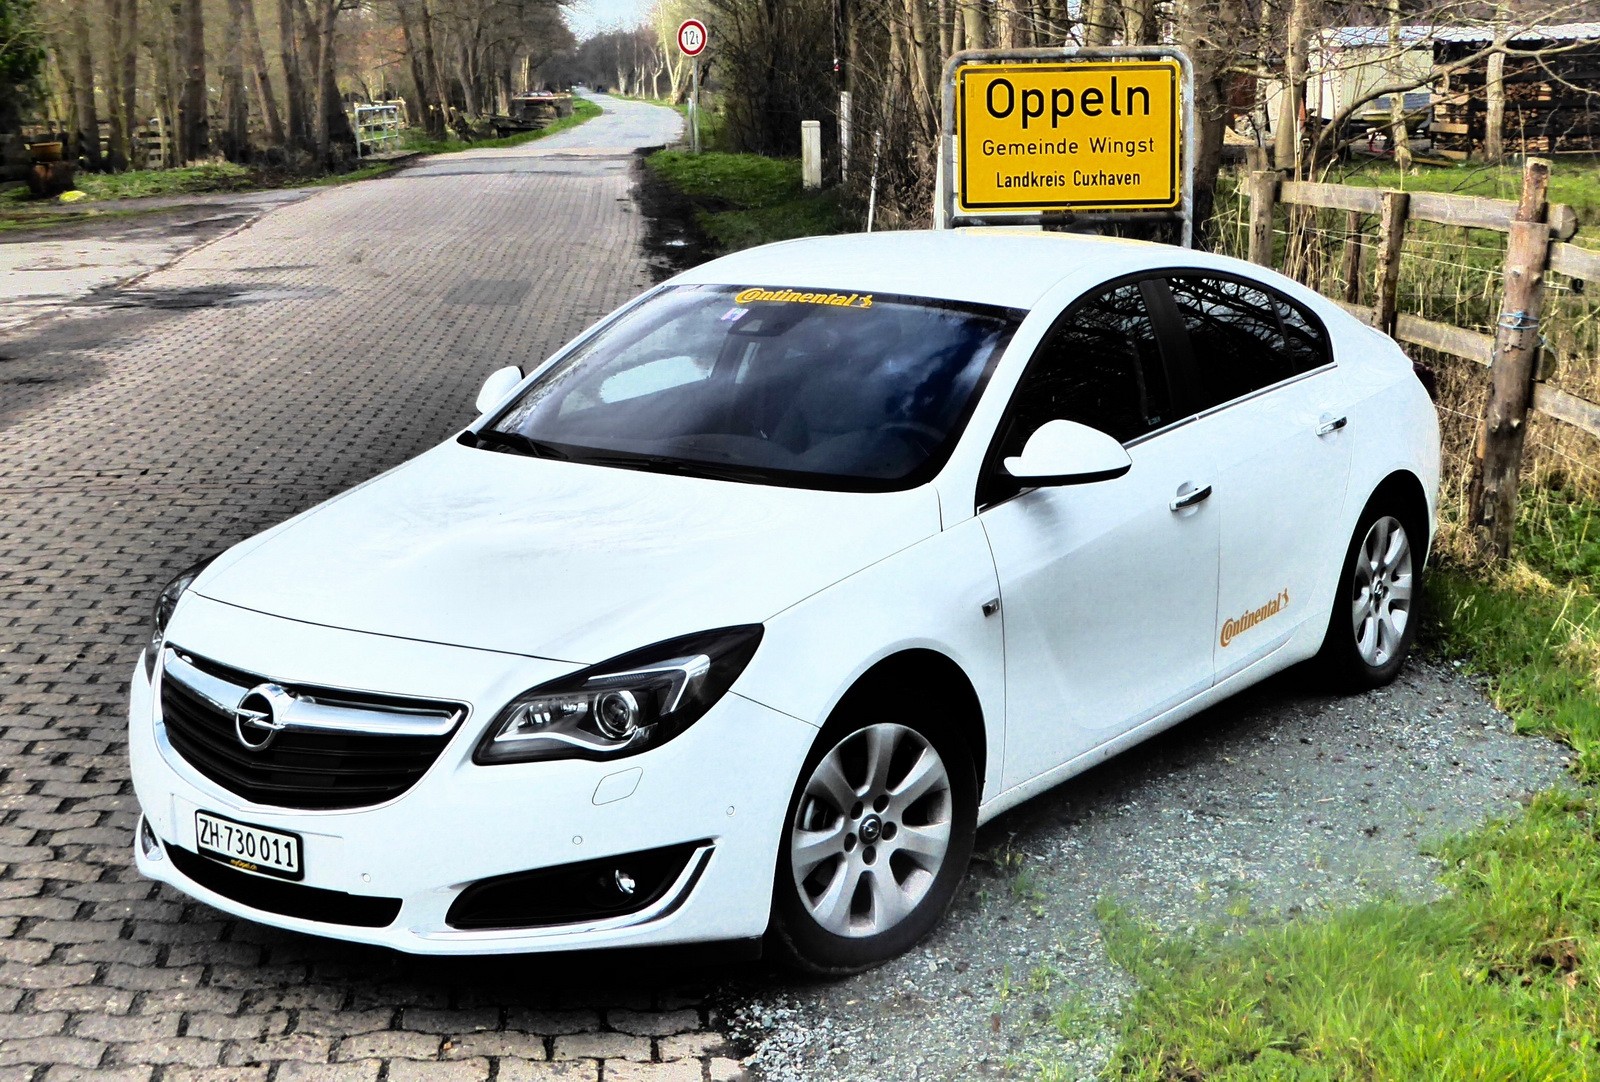 Opel дизельный